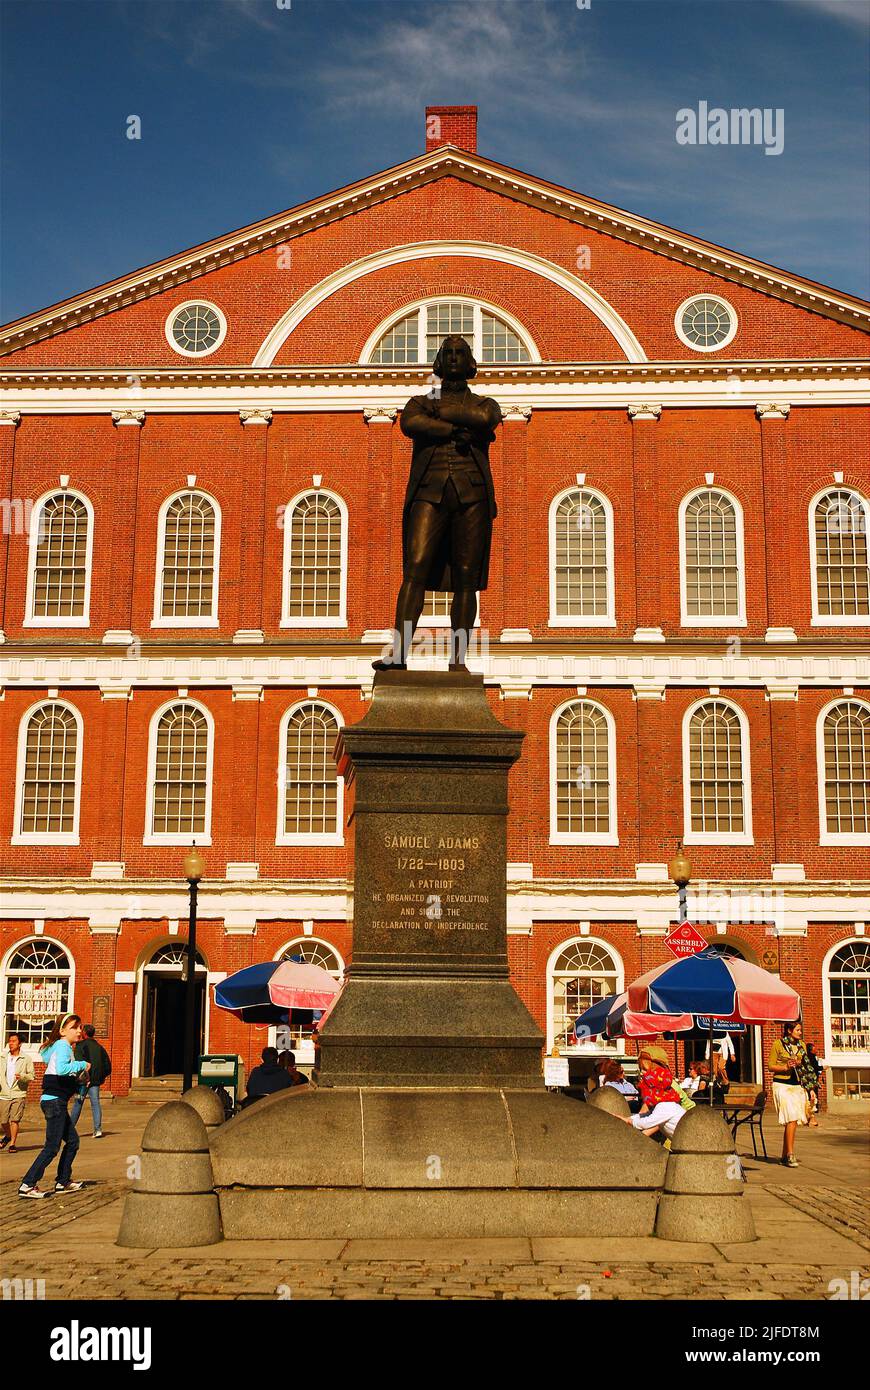 Una estatua de Sam Adams está frente a Faneuil Hall, donde el orador dio discursos ardientes sobre la independencia durante el gobierno colonial británico Foto de stock